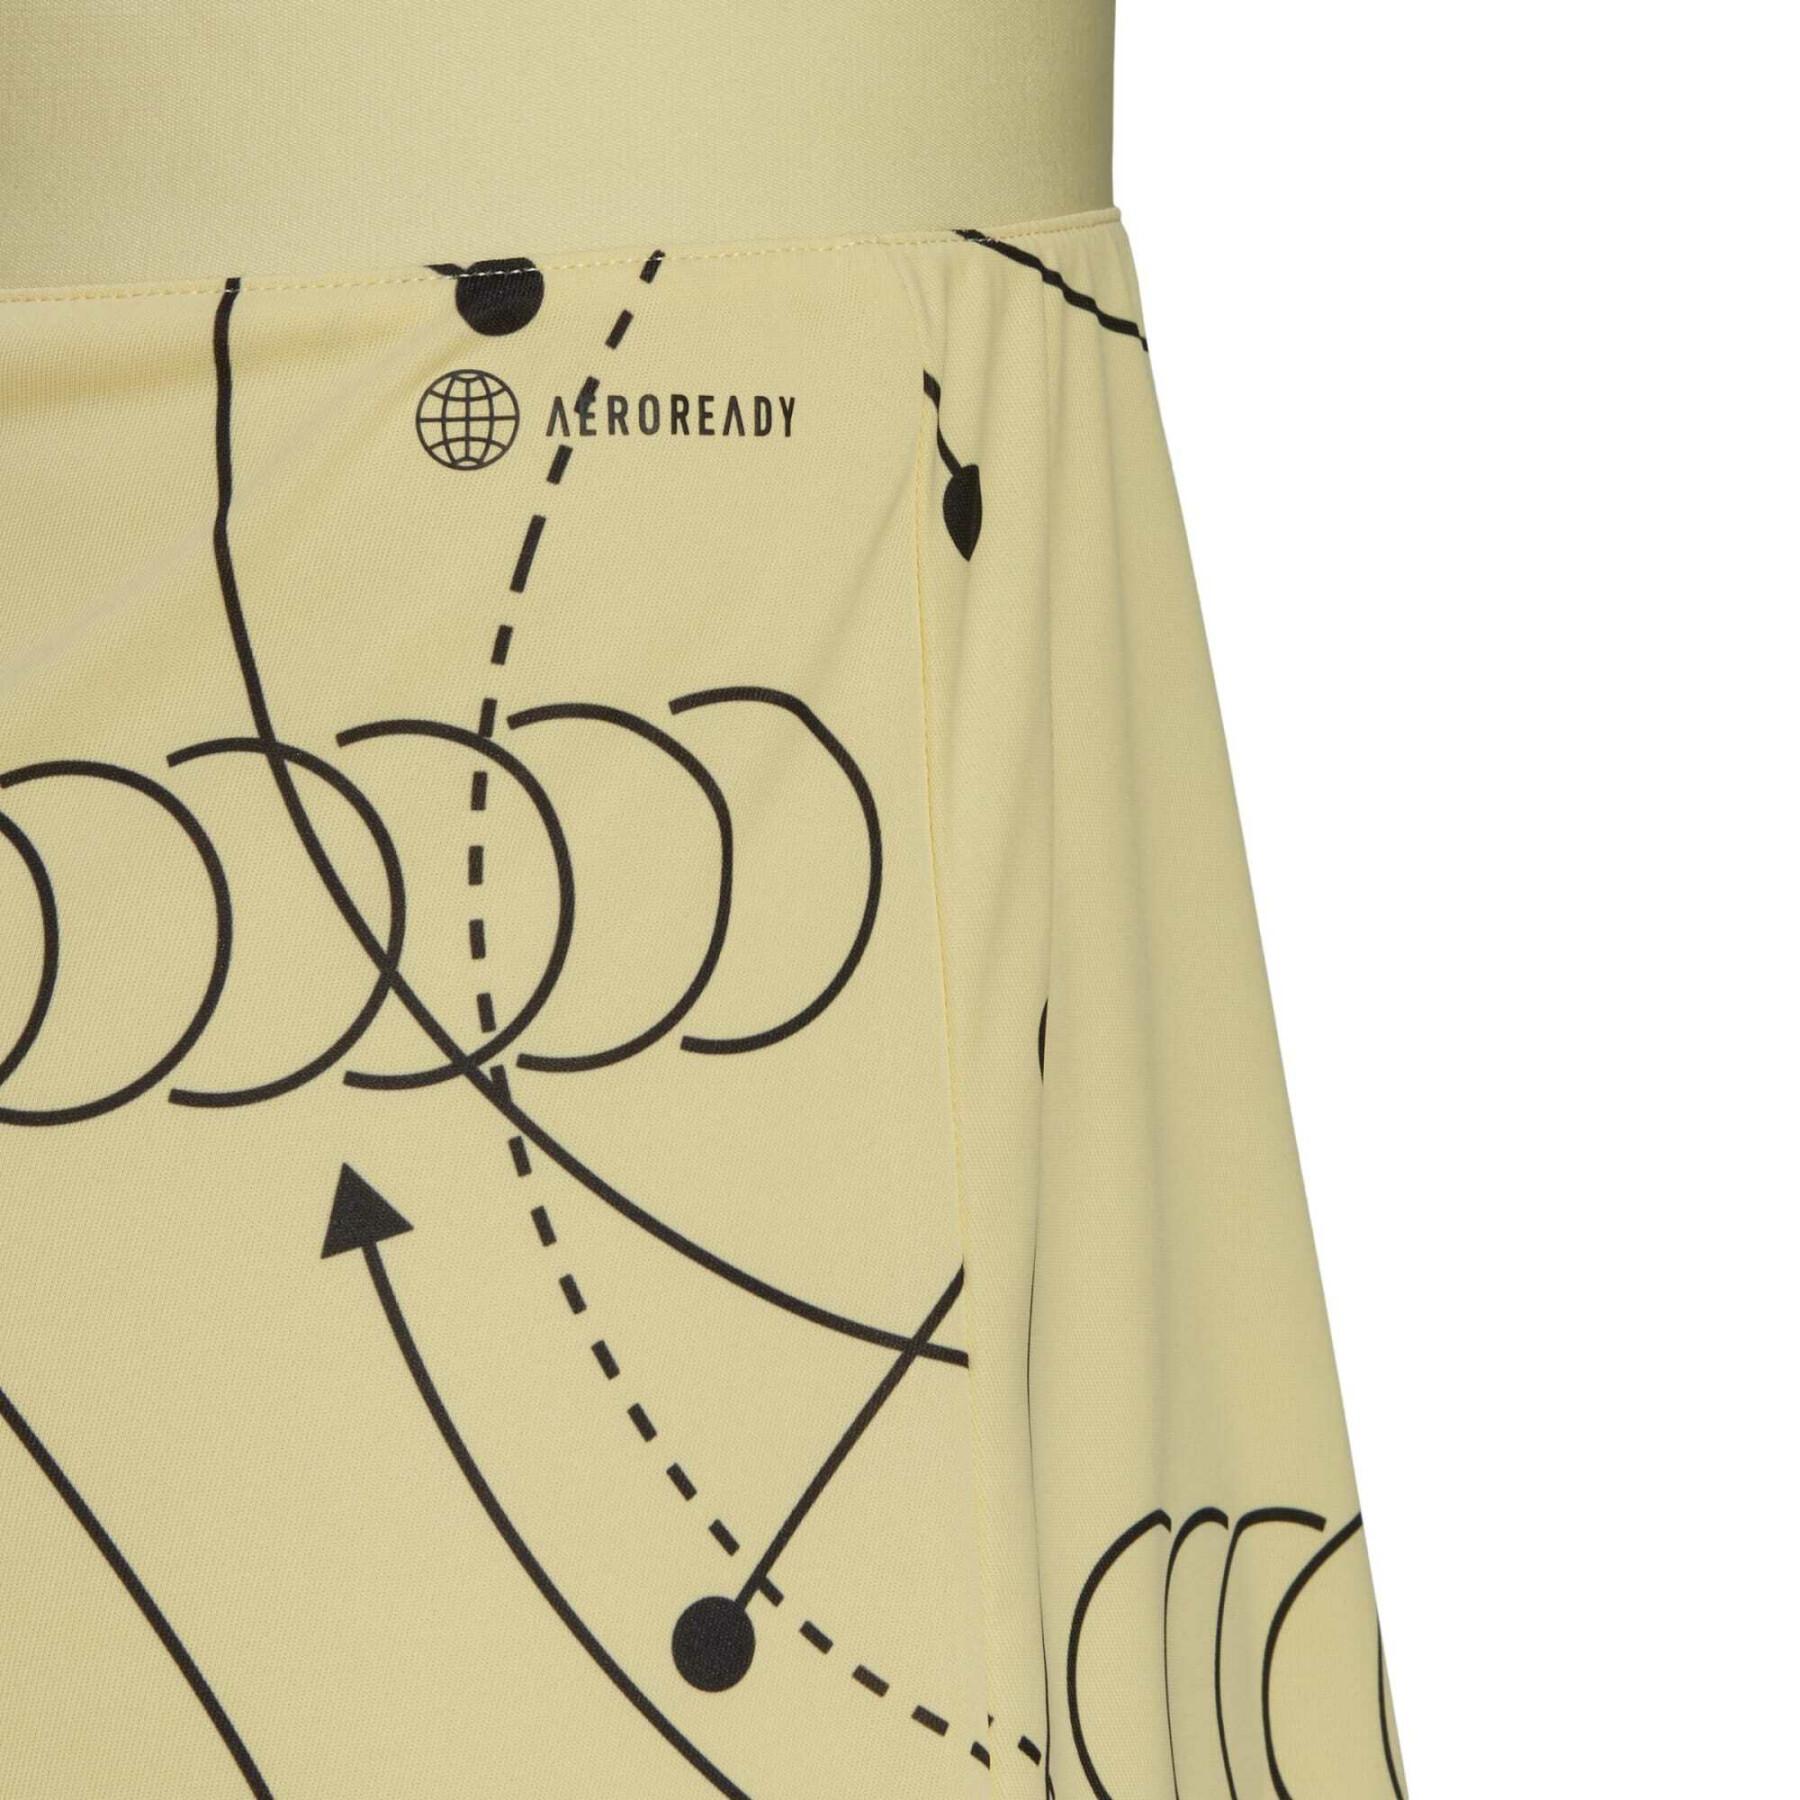 Falda de tenis gráfica adidas